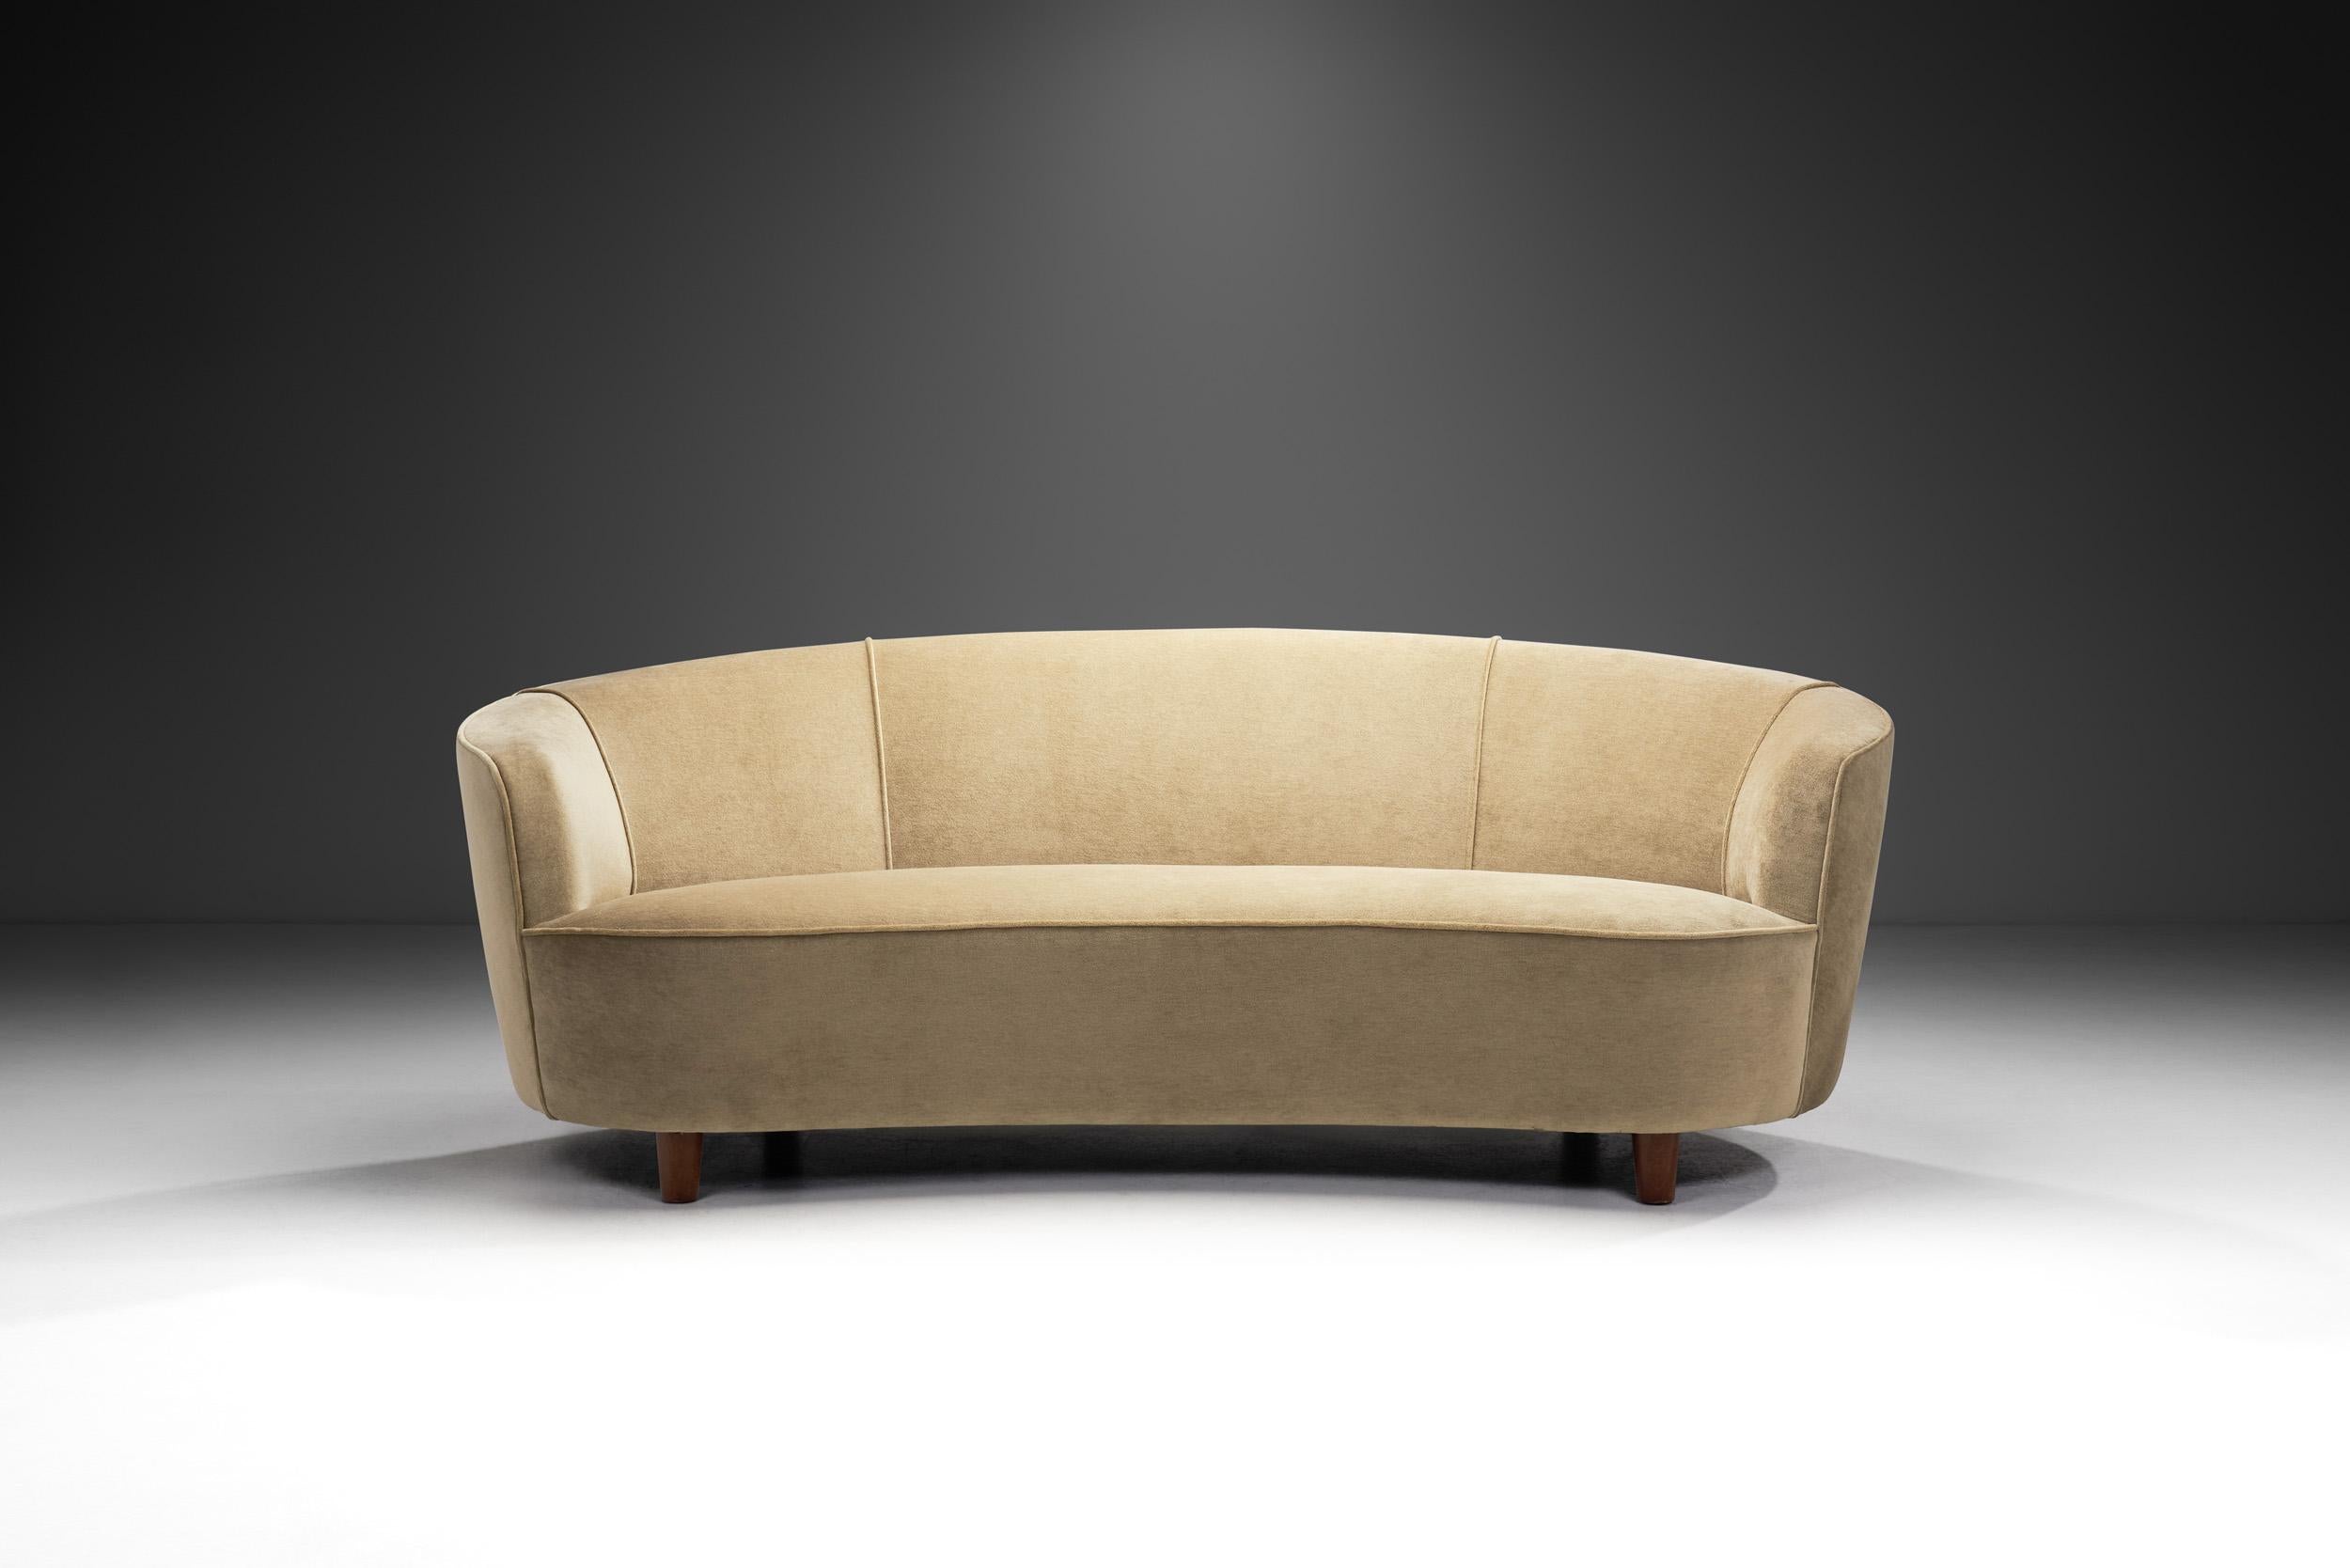 Gepolstertes Sofa von schwedischem Schreiner, Schweden, ca. 1950er Jahre (Moderne der Mitte des Jahrhunderts)